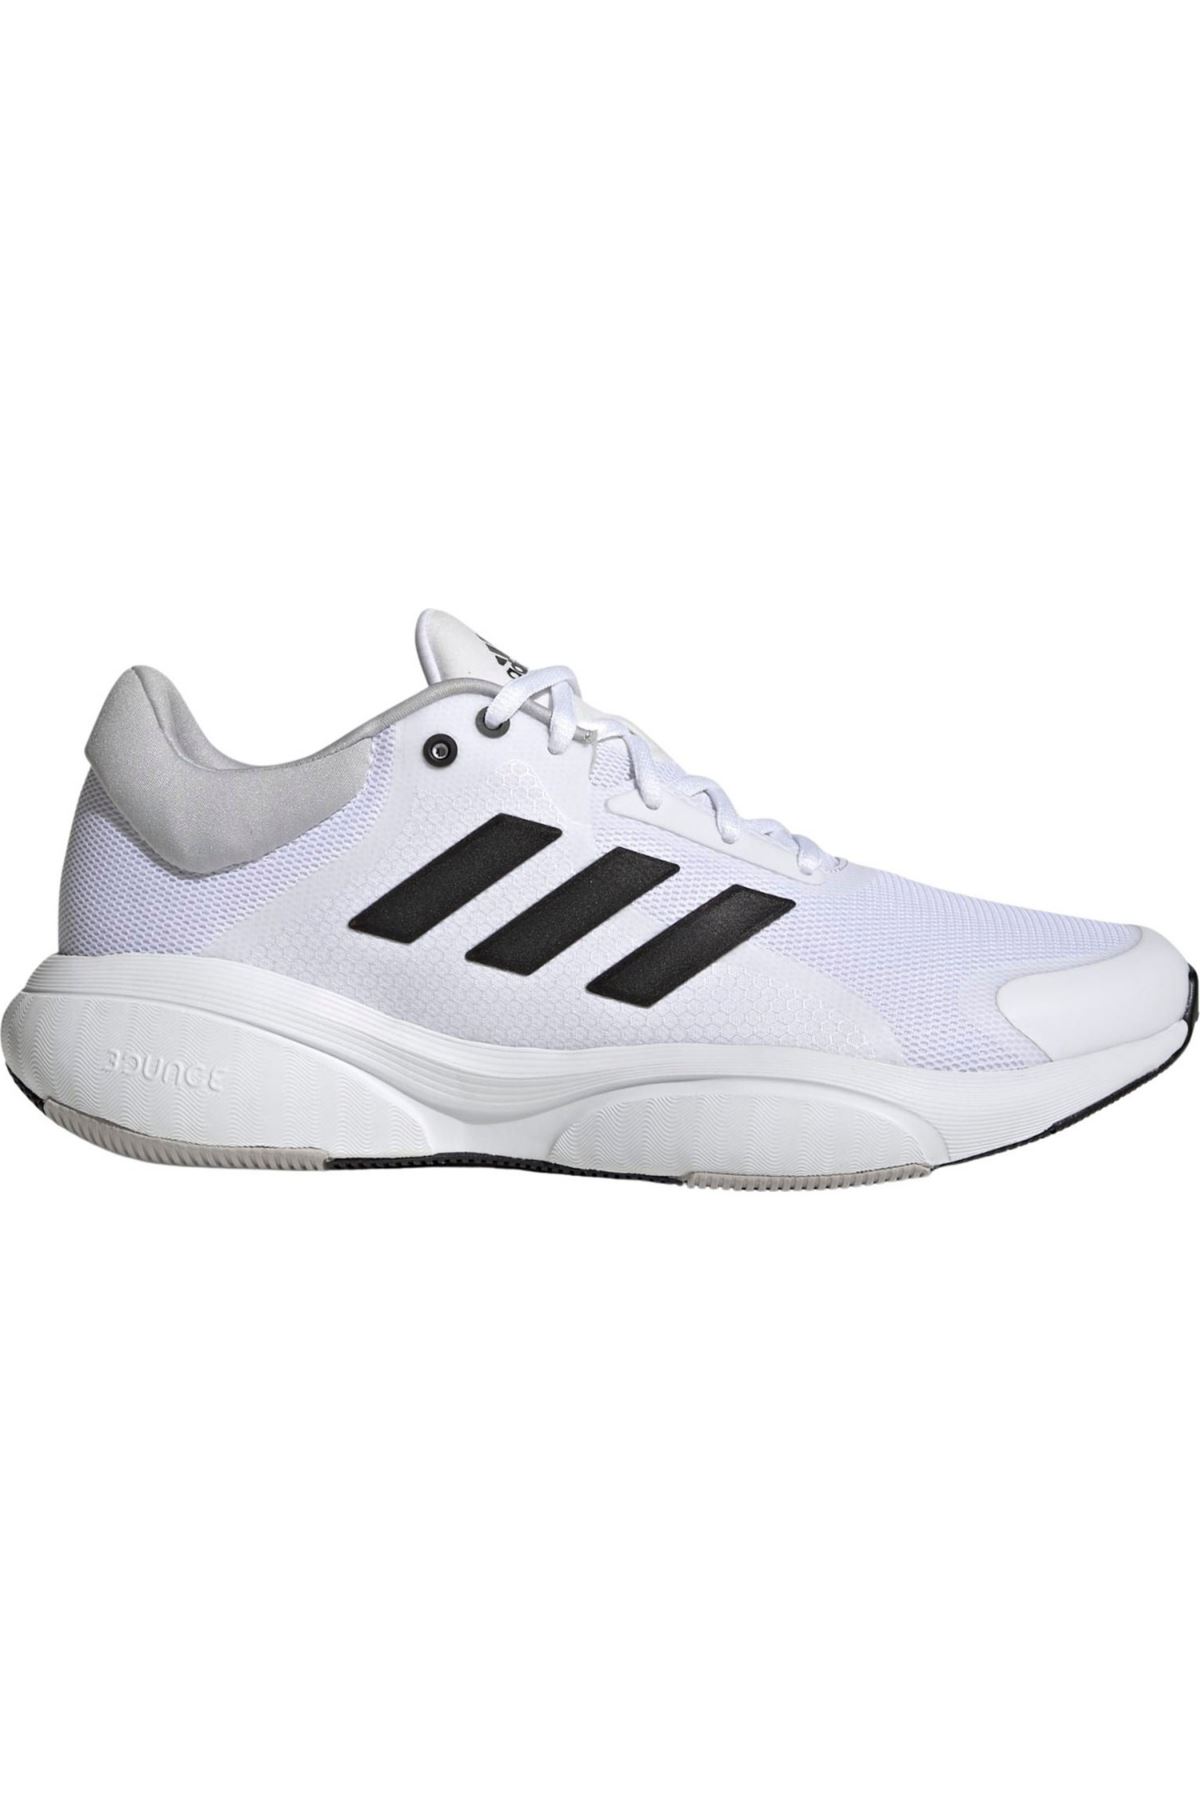 Adidas Response Erkek Beyaz Spor Ayakkabı - GX1999